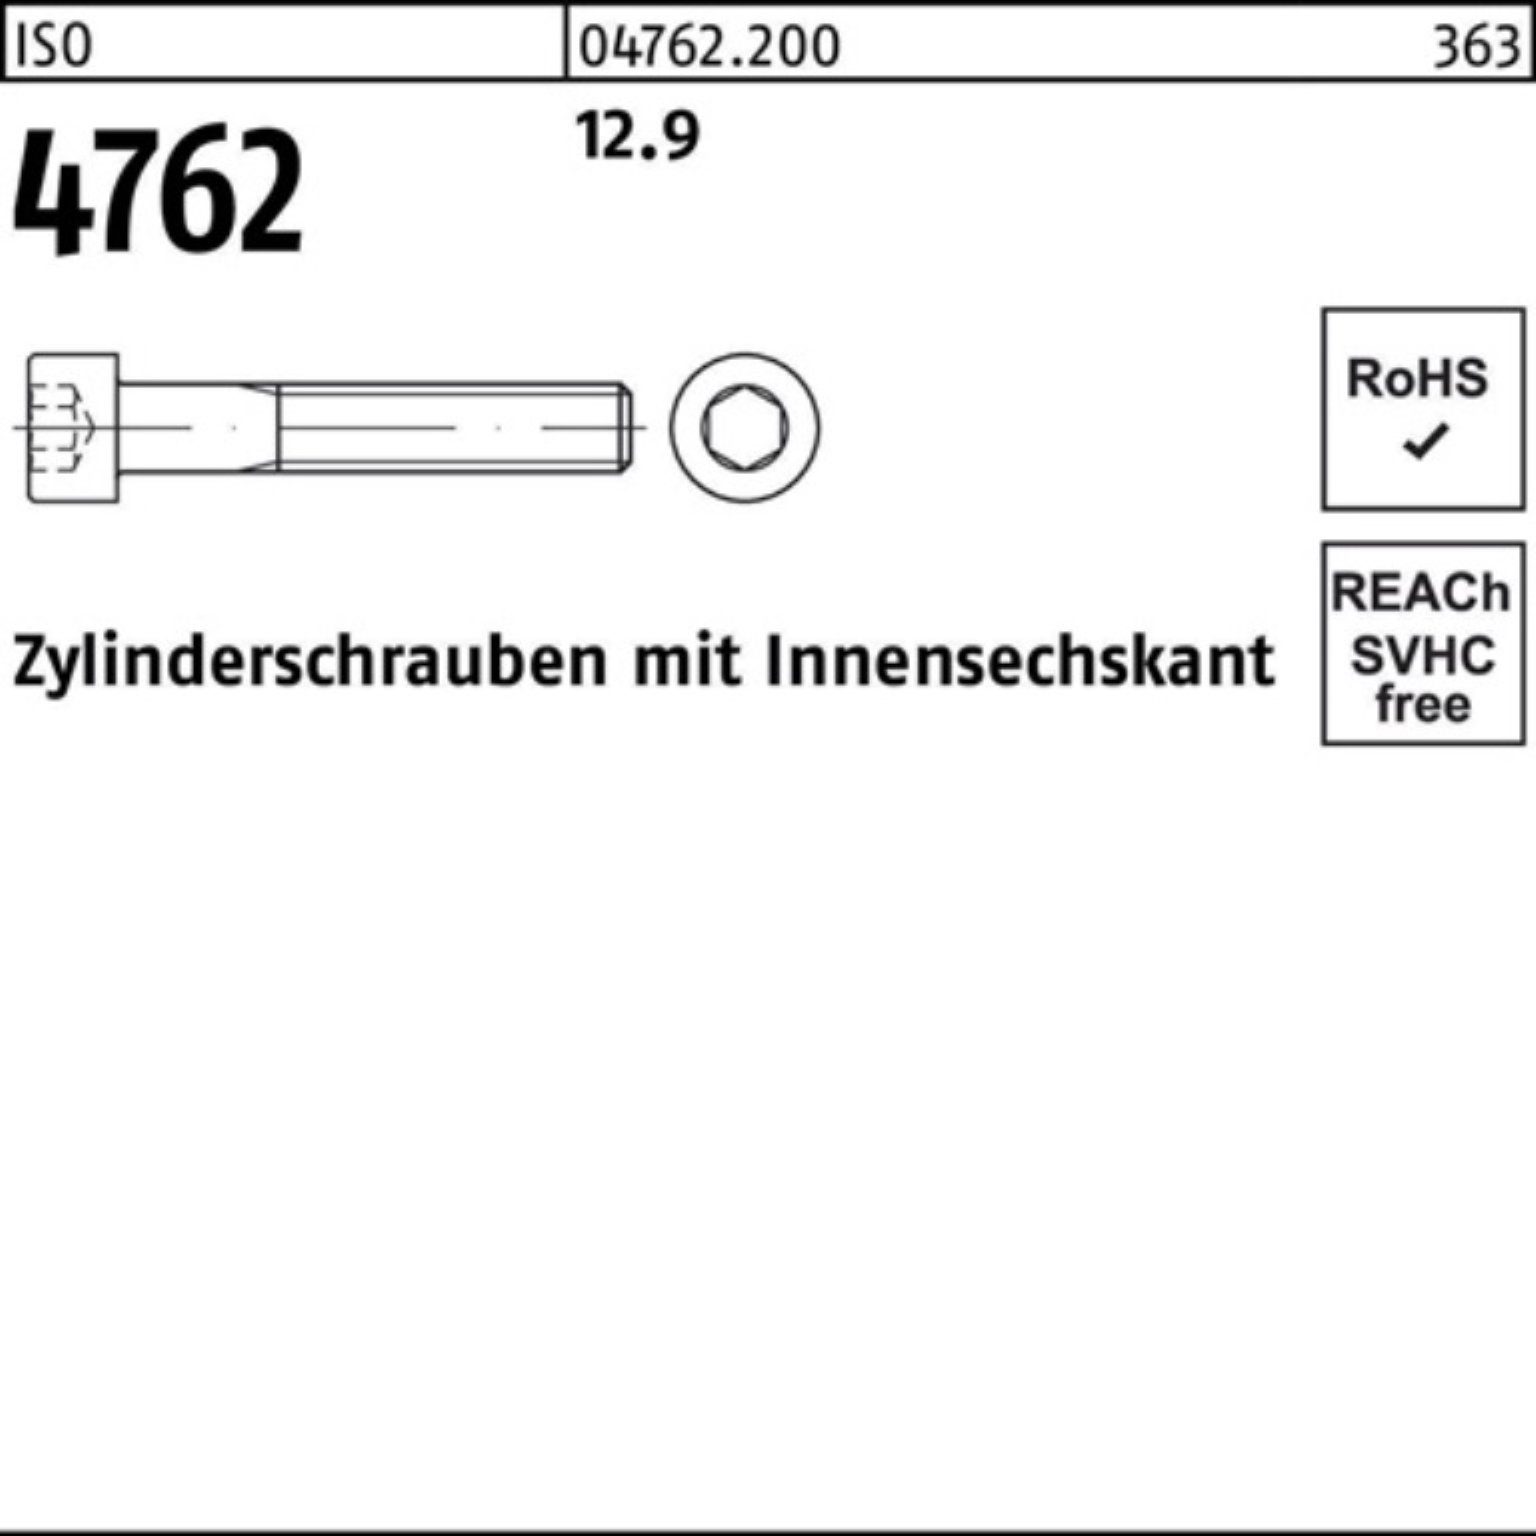 4762 Zylinderschraube Stück 290 Reyher 1 100er Zylinderschraube Innen-6kt M24x Pack 12.9 ISO